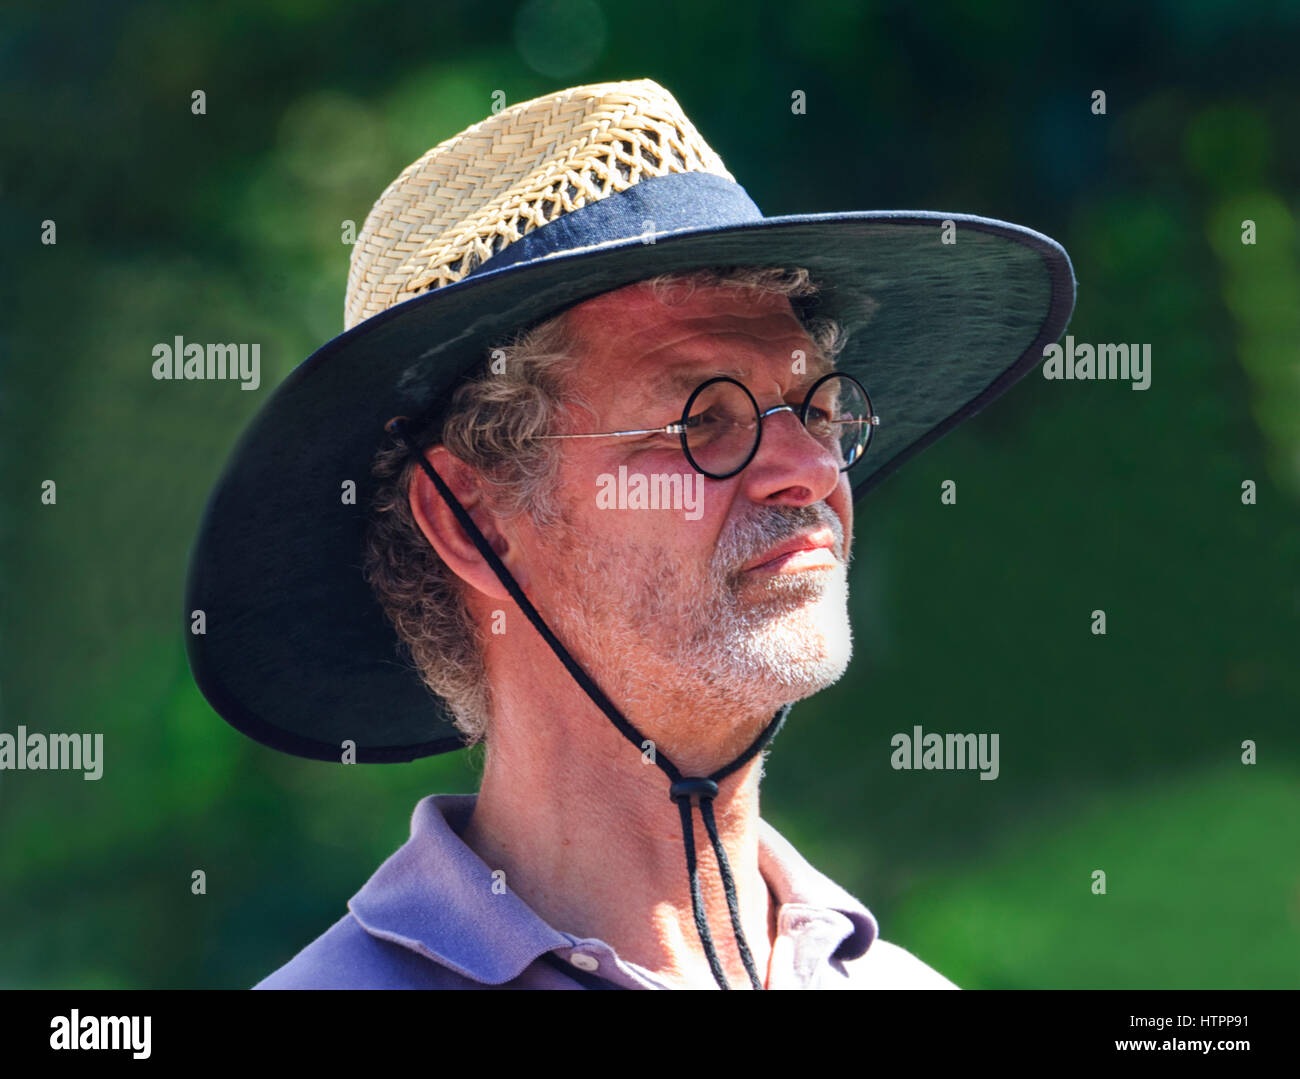 Hombre espectador llevaba gafas redondas y un sombrero de paja en Kiama Jazz & Blues Festival 2017, Costa Illawarra, Nueva Gales del Sur (NSW, Australia Foto de stock